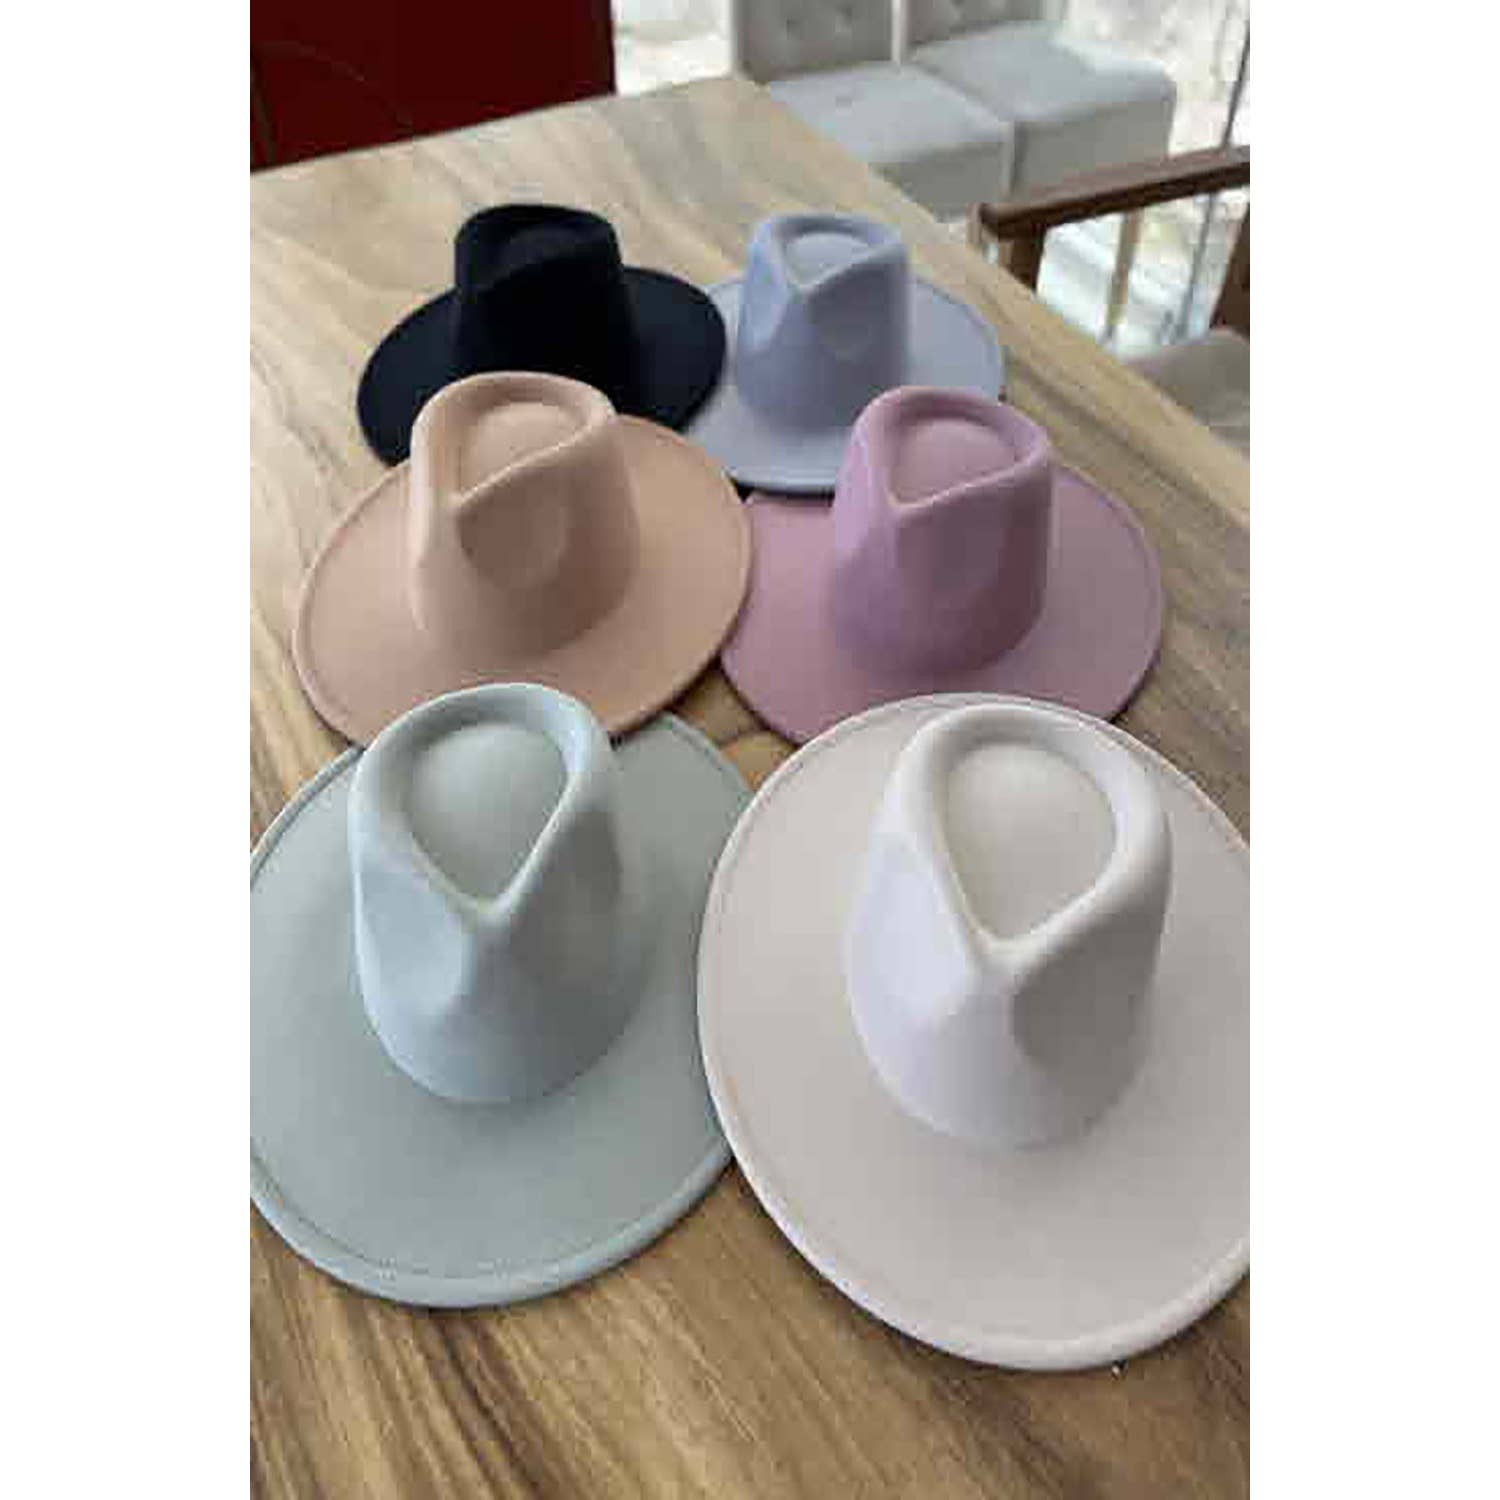 Flat Brim Fedora Fashion Hat